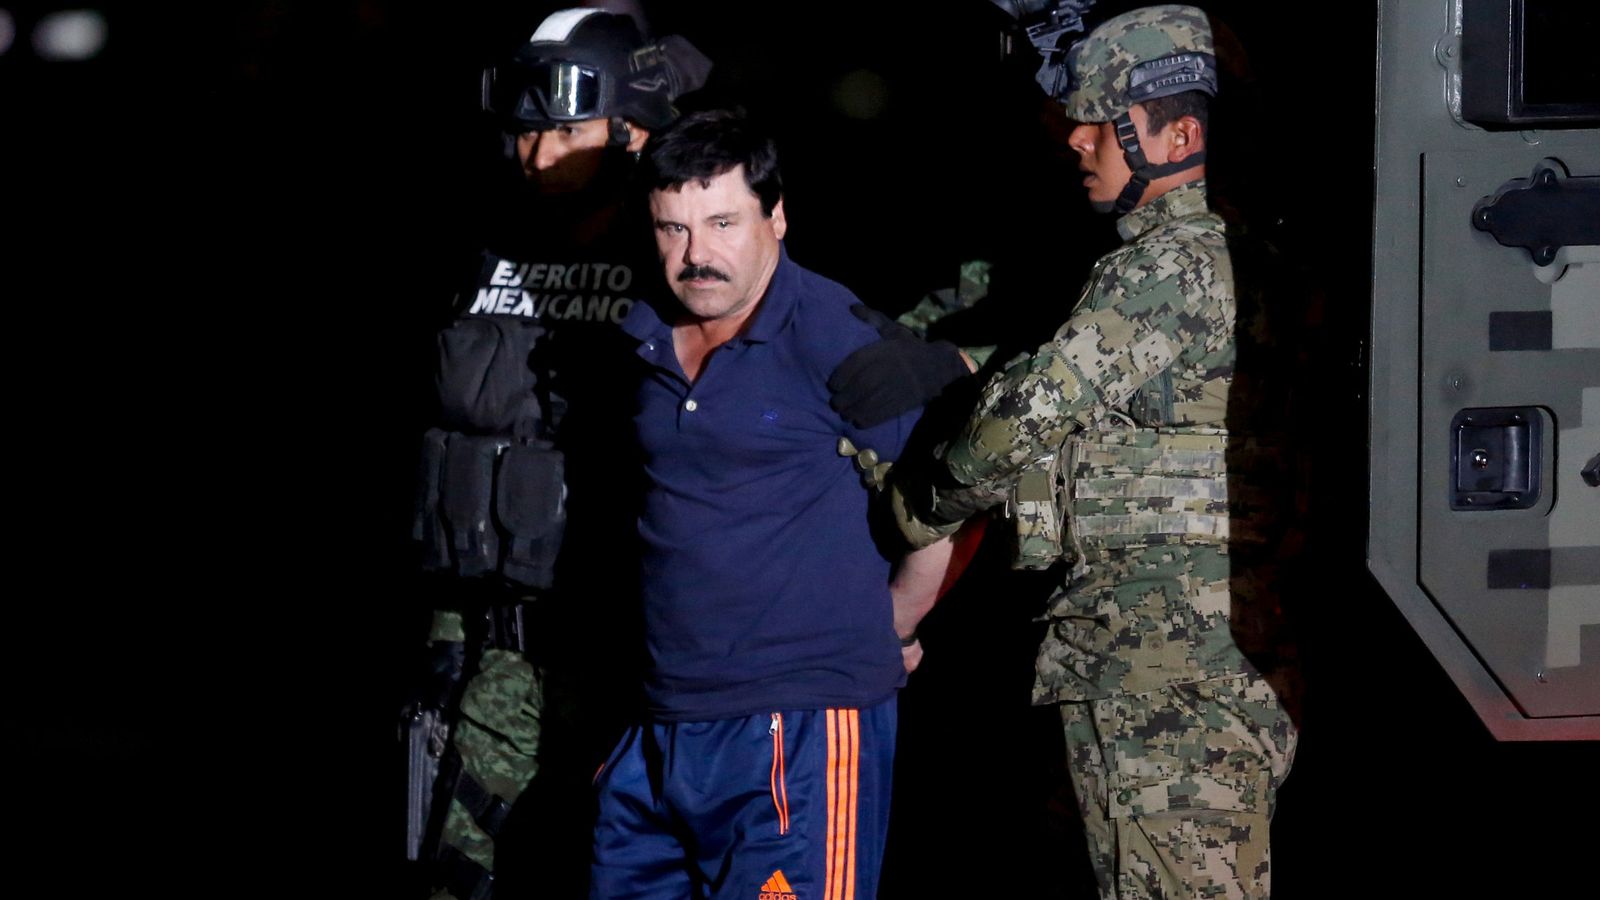 Foto: Joaquín "El Chapo" Guzmán es exhibido por el Ejército el 8 de enero de 2016 en el aeropuerto de la Ciudad de México, tras ser capturado por última vez. (REUTERS/Tomás Bravo)